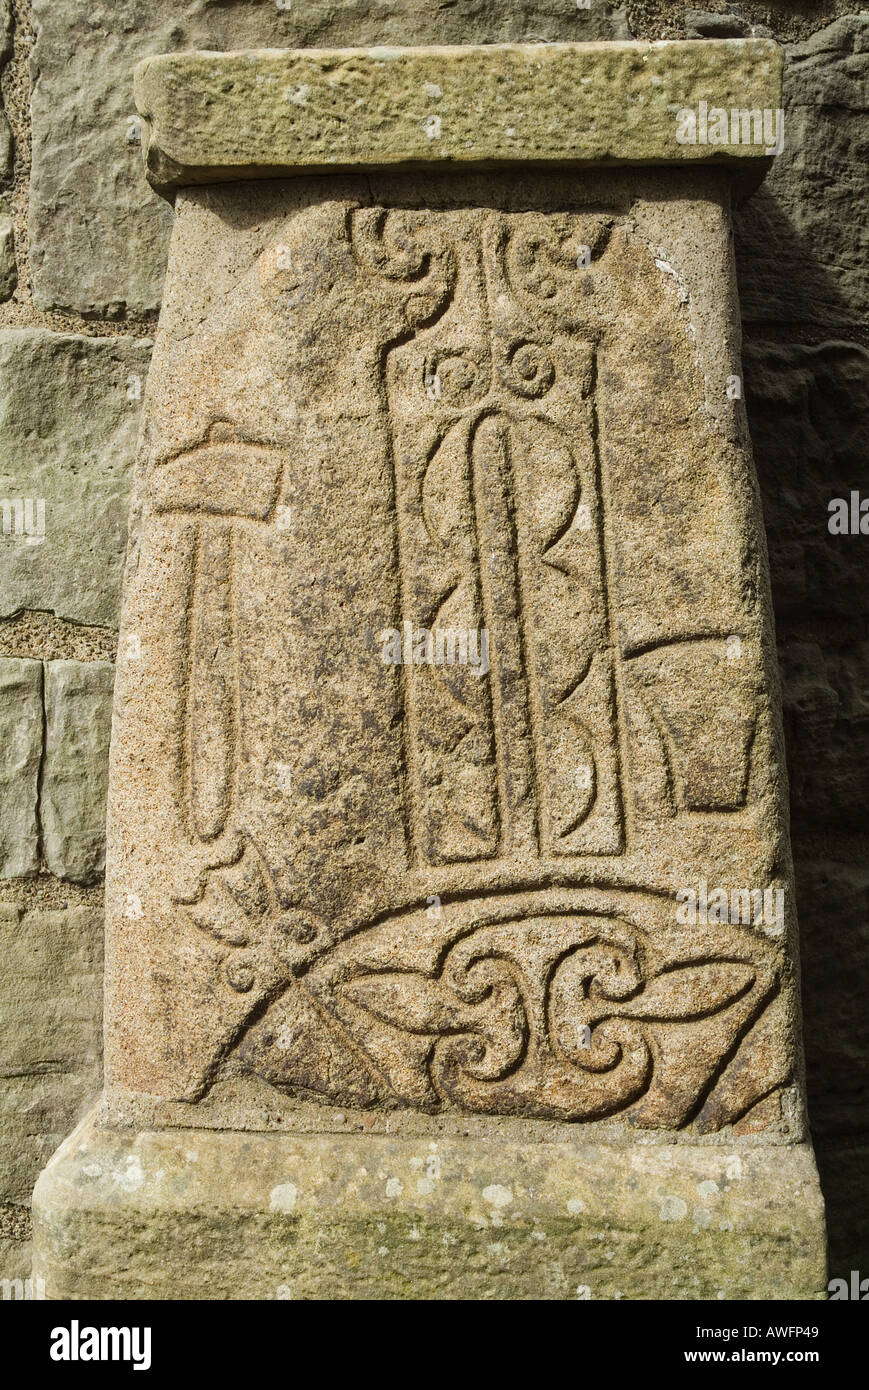 dh Pichtish art sculptant ABERNETHY PERTHSHIRE ECOSSE sur la pierre à Pied de la tour ronde celtique irlandaise du 11ème siècle, symbole pict Banque D'Images